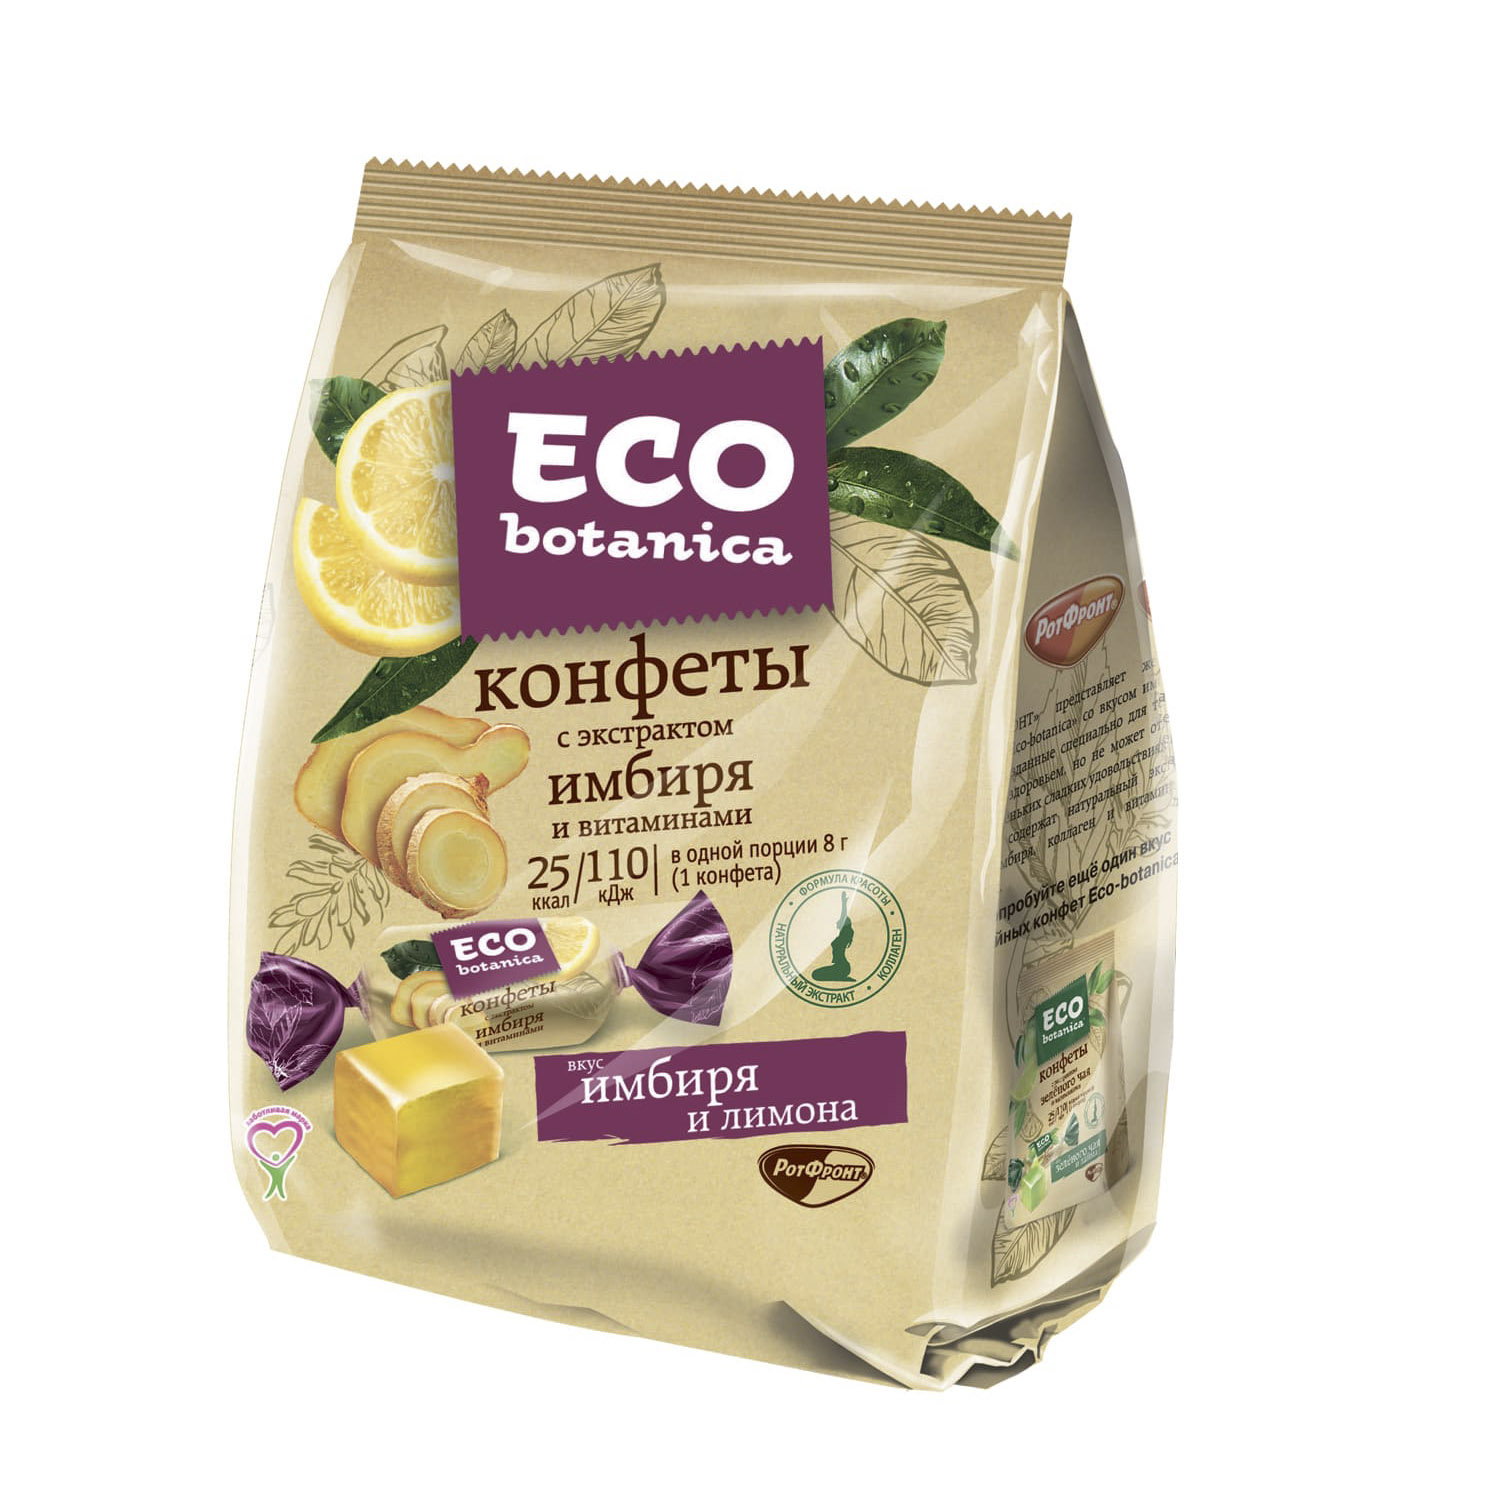 Конфеты Eco botanica с экстрактом имбиря и витаминами 200 г цена и фото